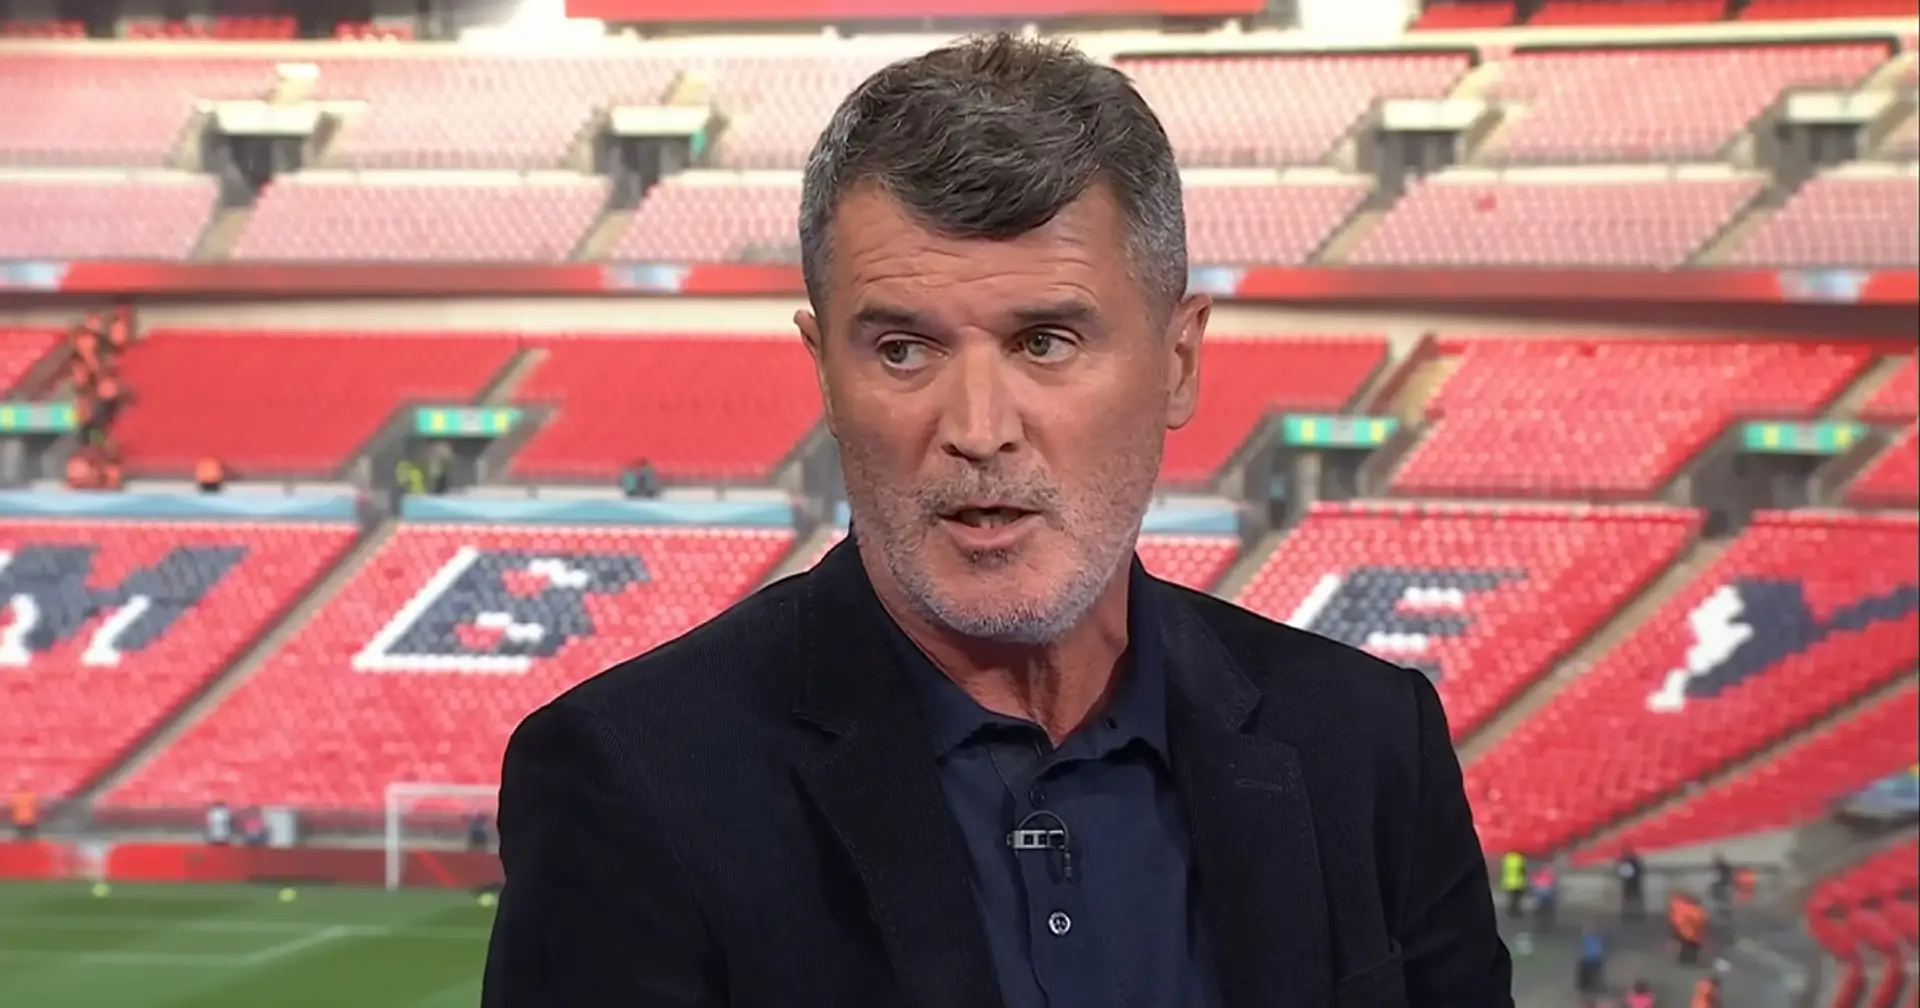 Roy Keane: 'I almost dislike Man United'